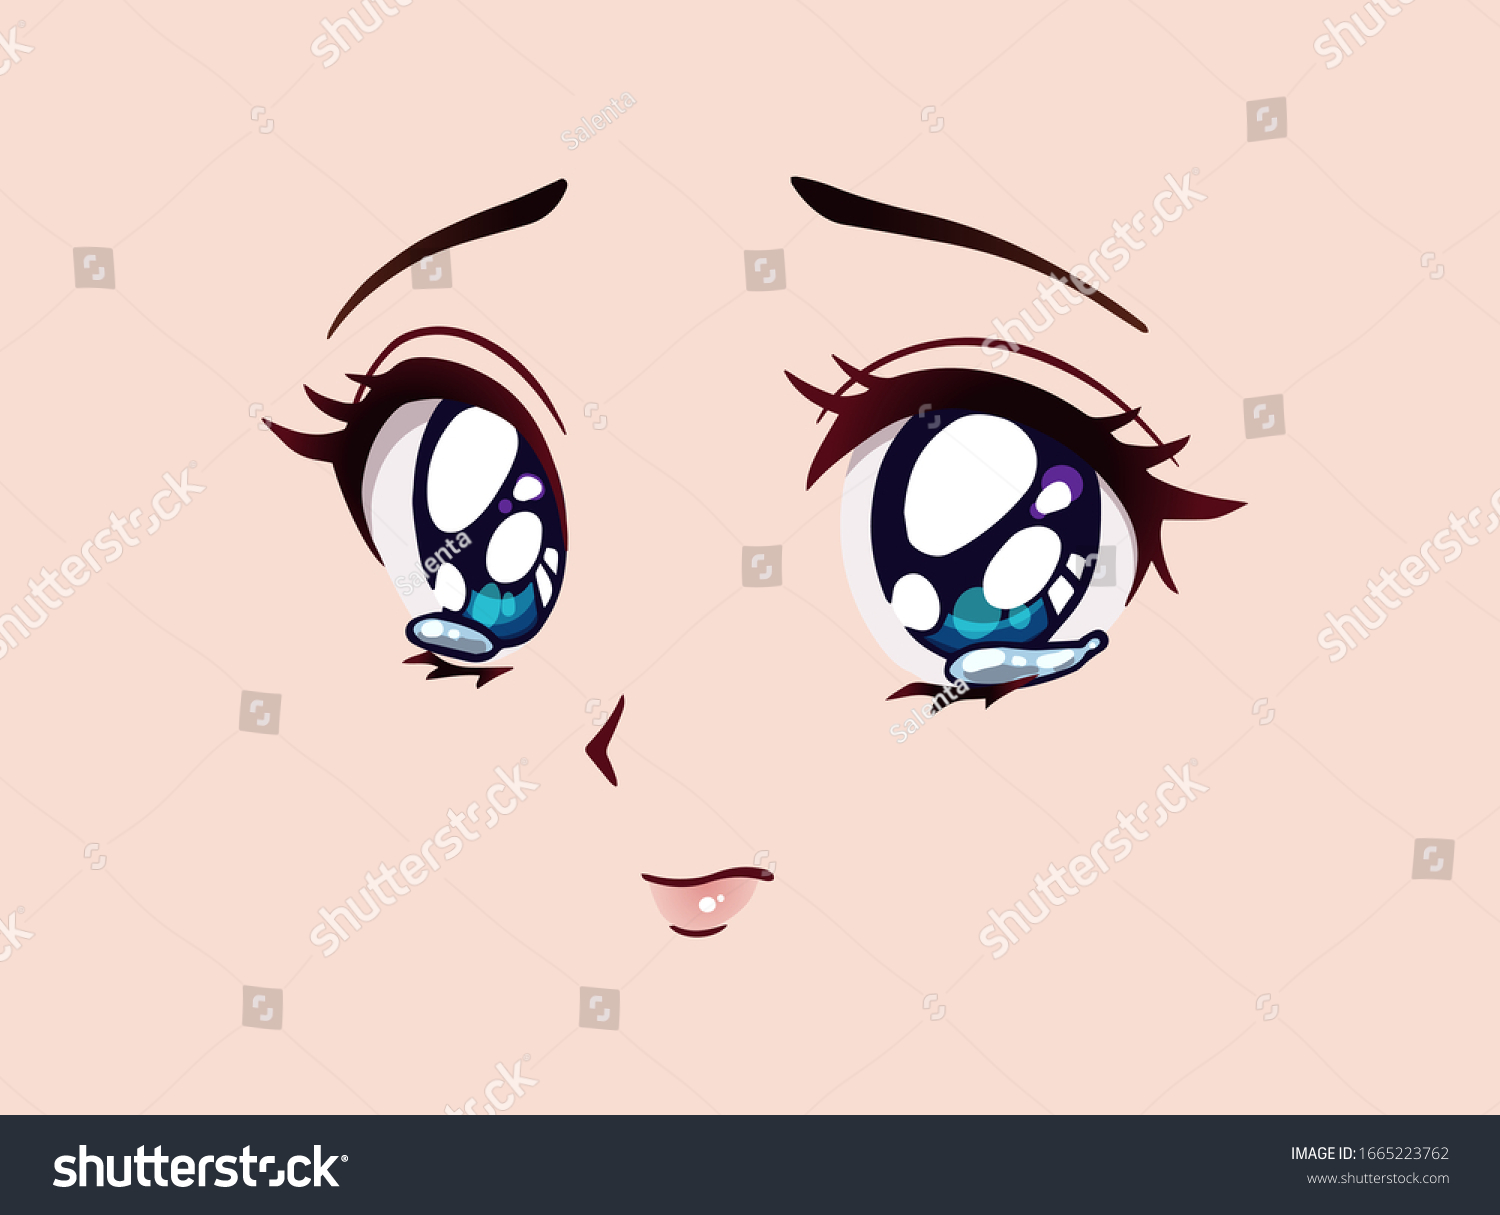 悲しいアニメの顔 まんが風の大きな青い目 小さな鼻 かわいい口 目に涙 手描きのベクターカートーンイラスト のベクター画像素材 ロイヤリティフリー